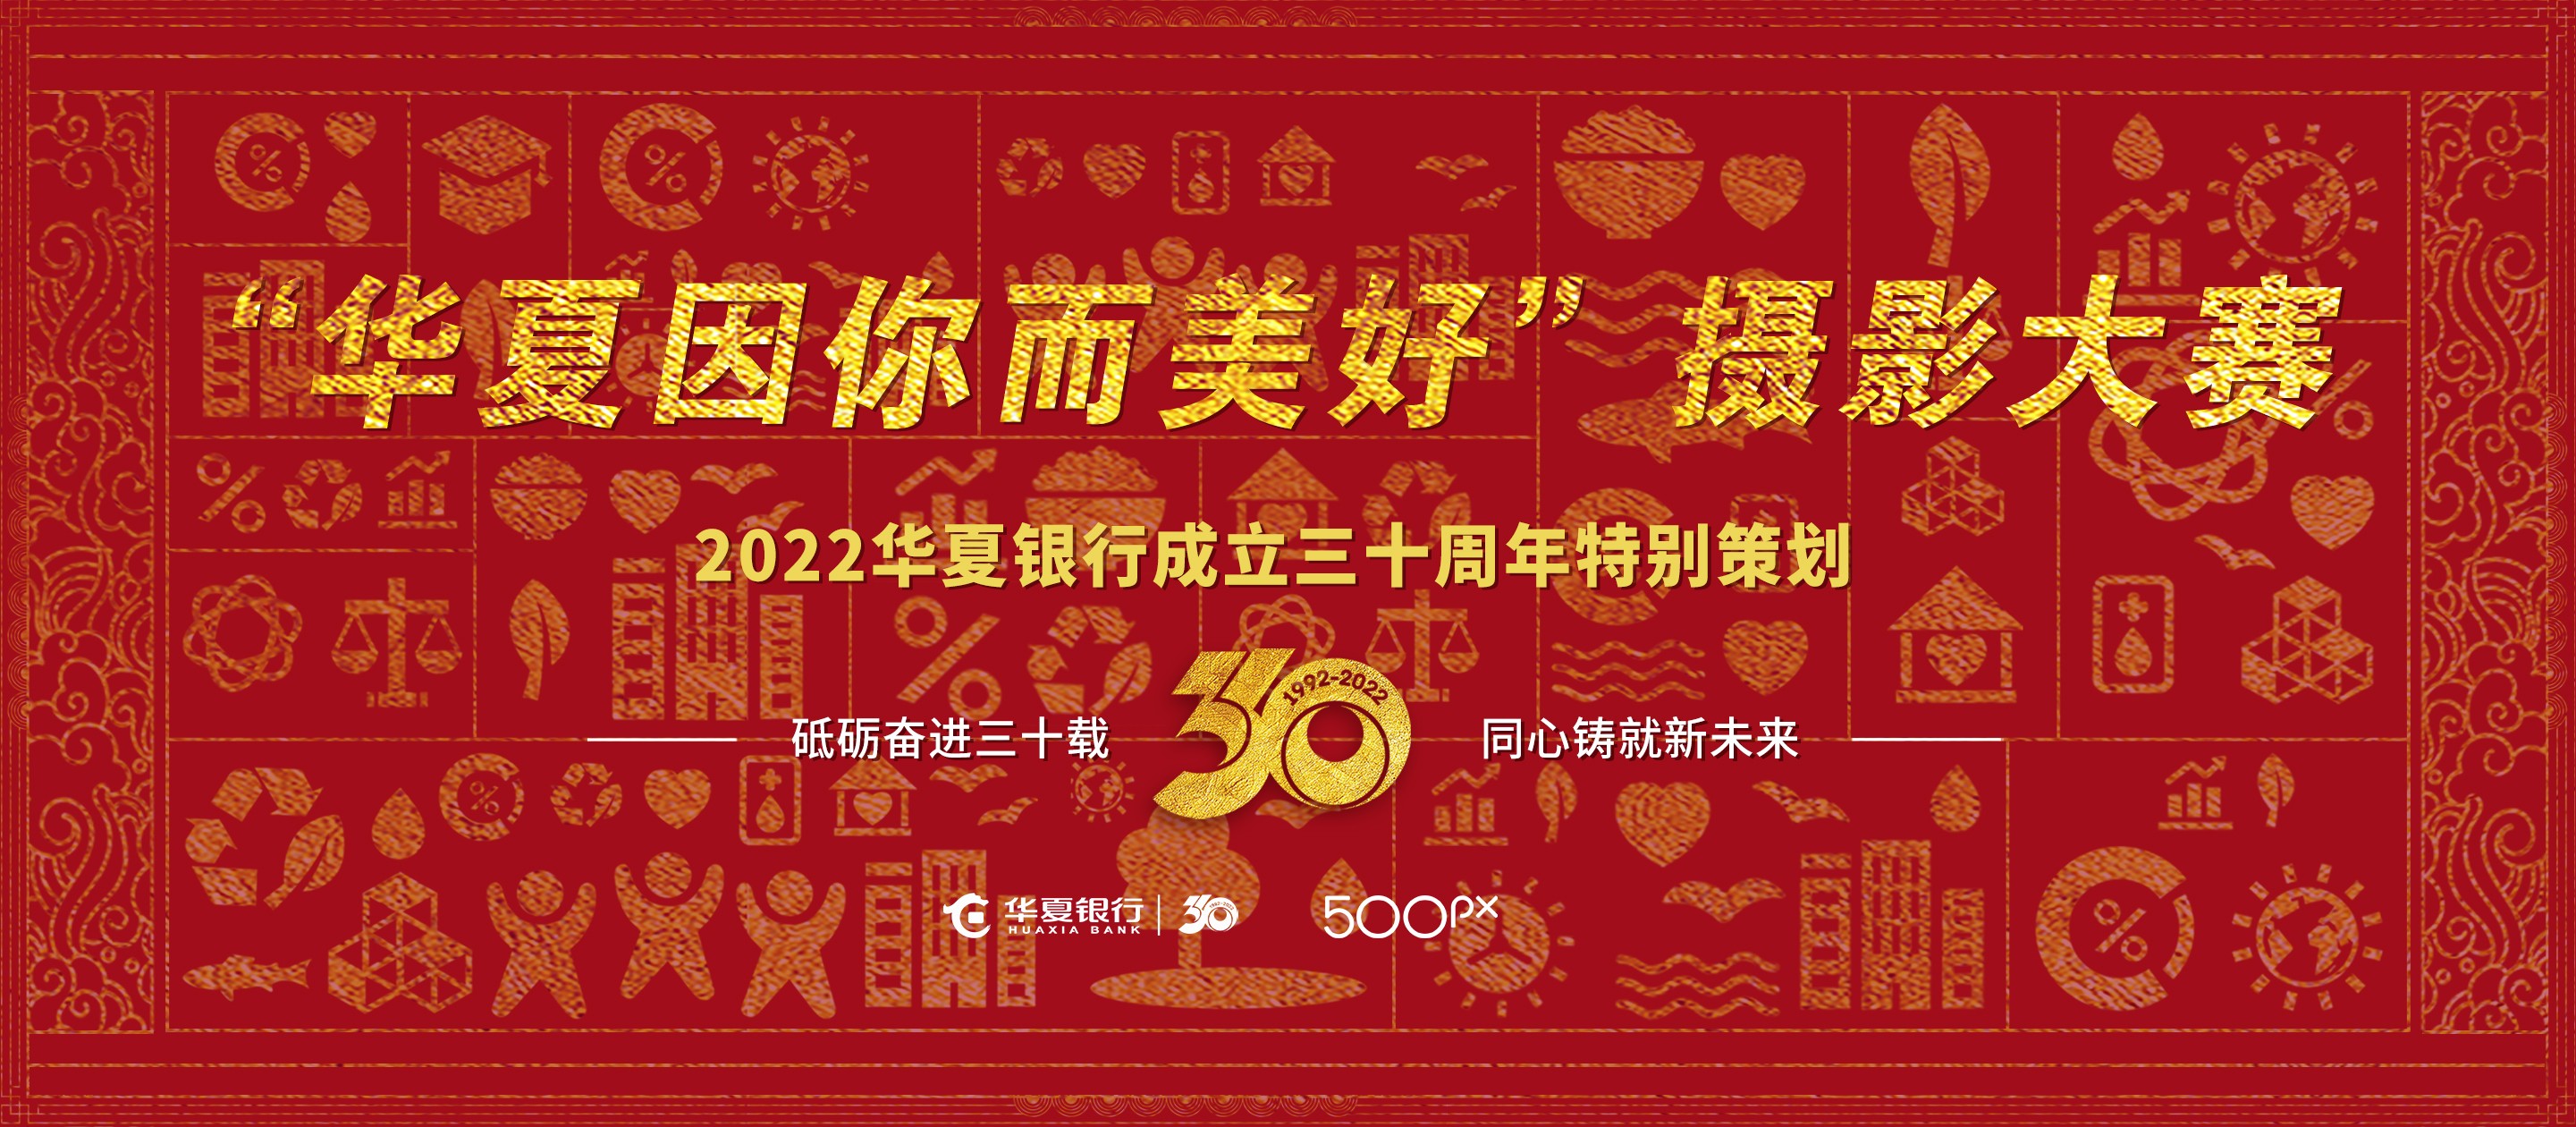 庆祝华夏银行成立三十周年 “华夏因你而美好”摄影大赛启幕